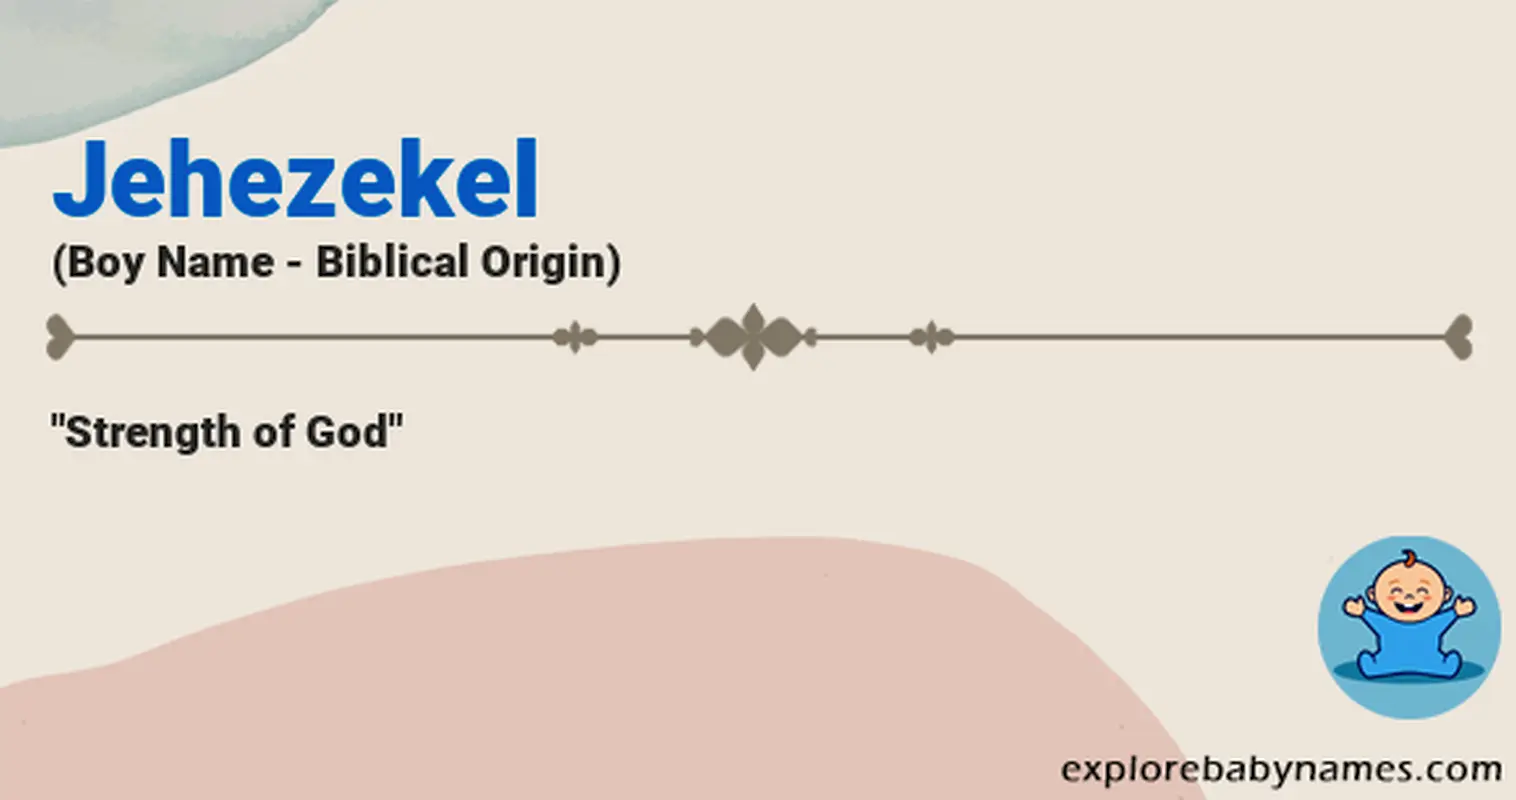 Meaning of Jehezekel